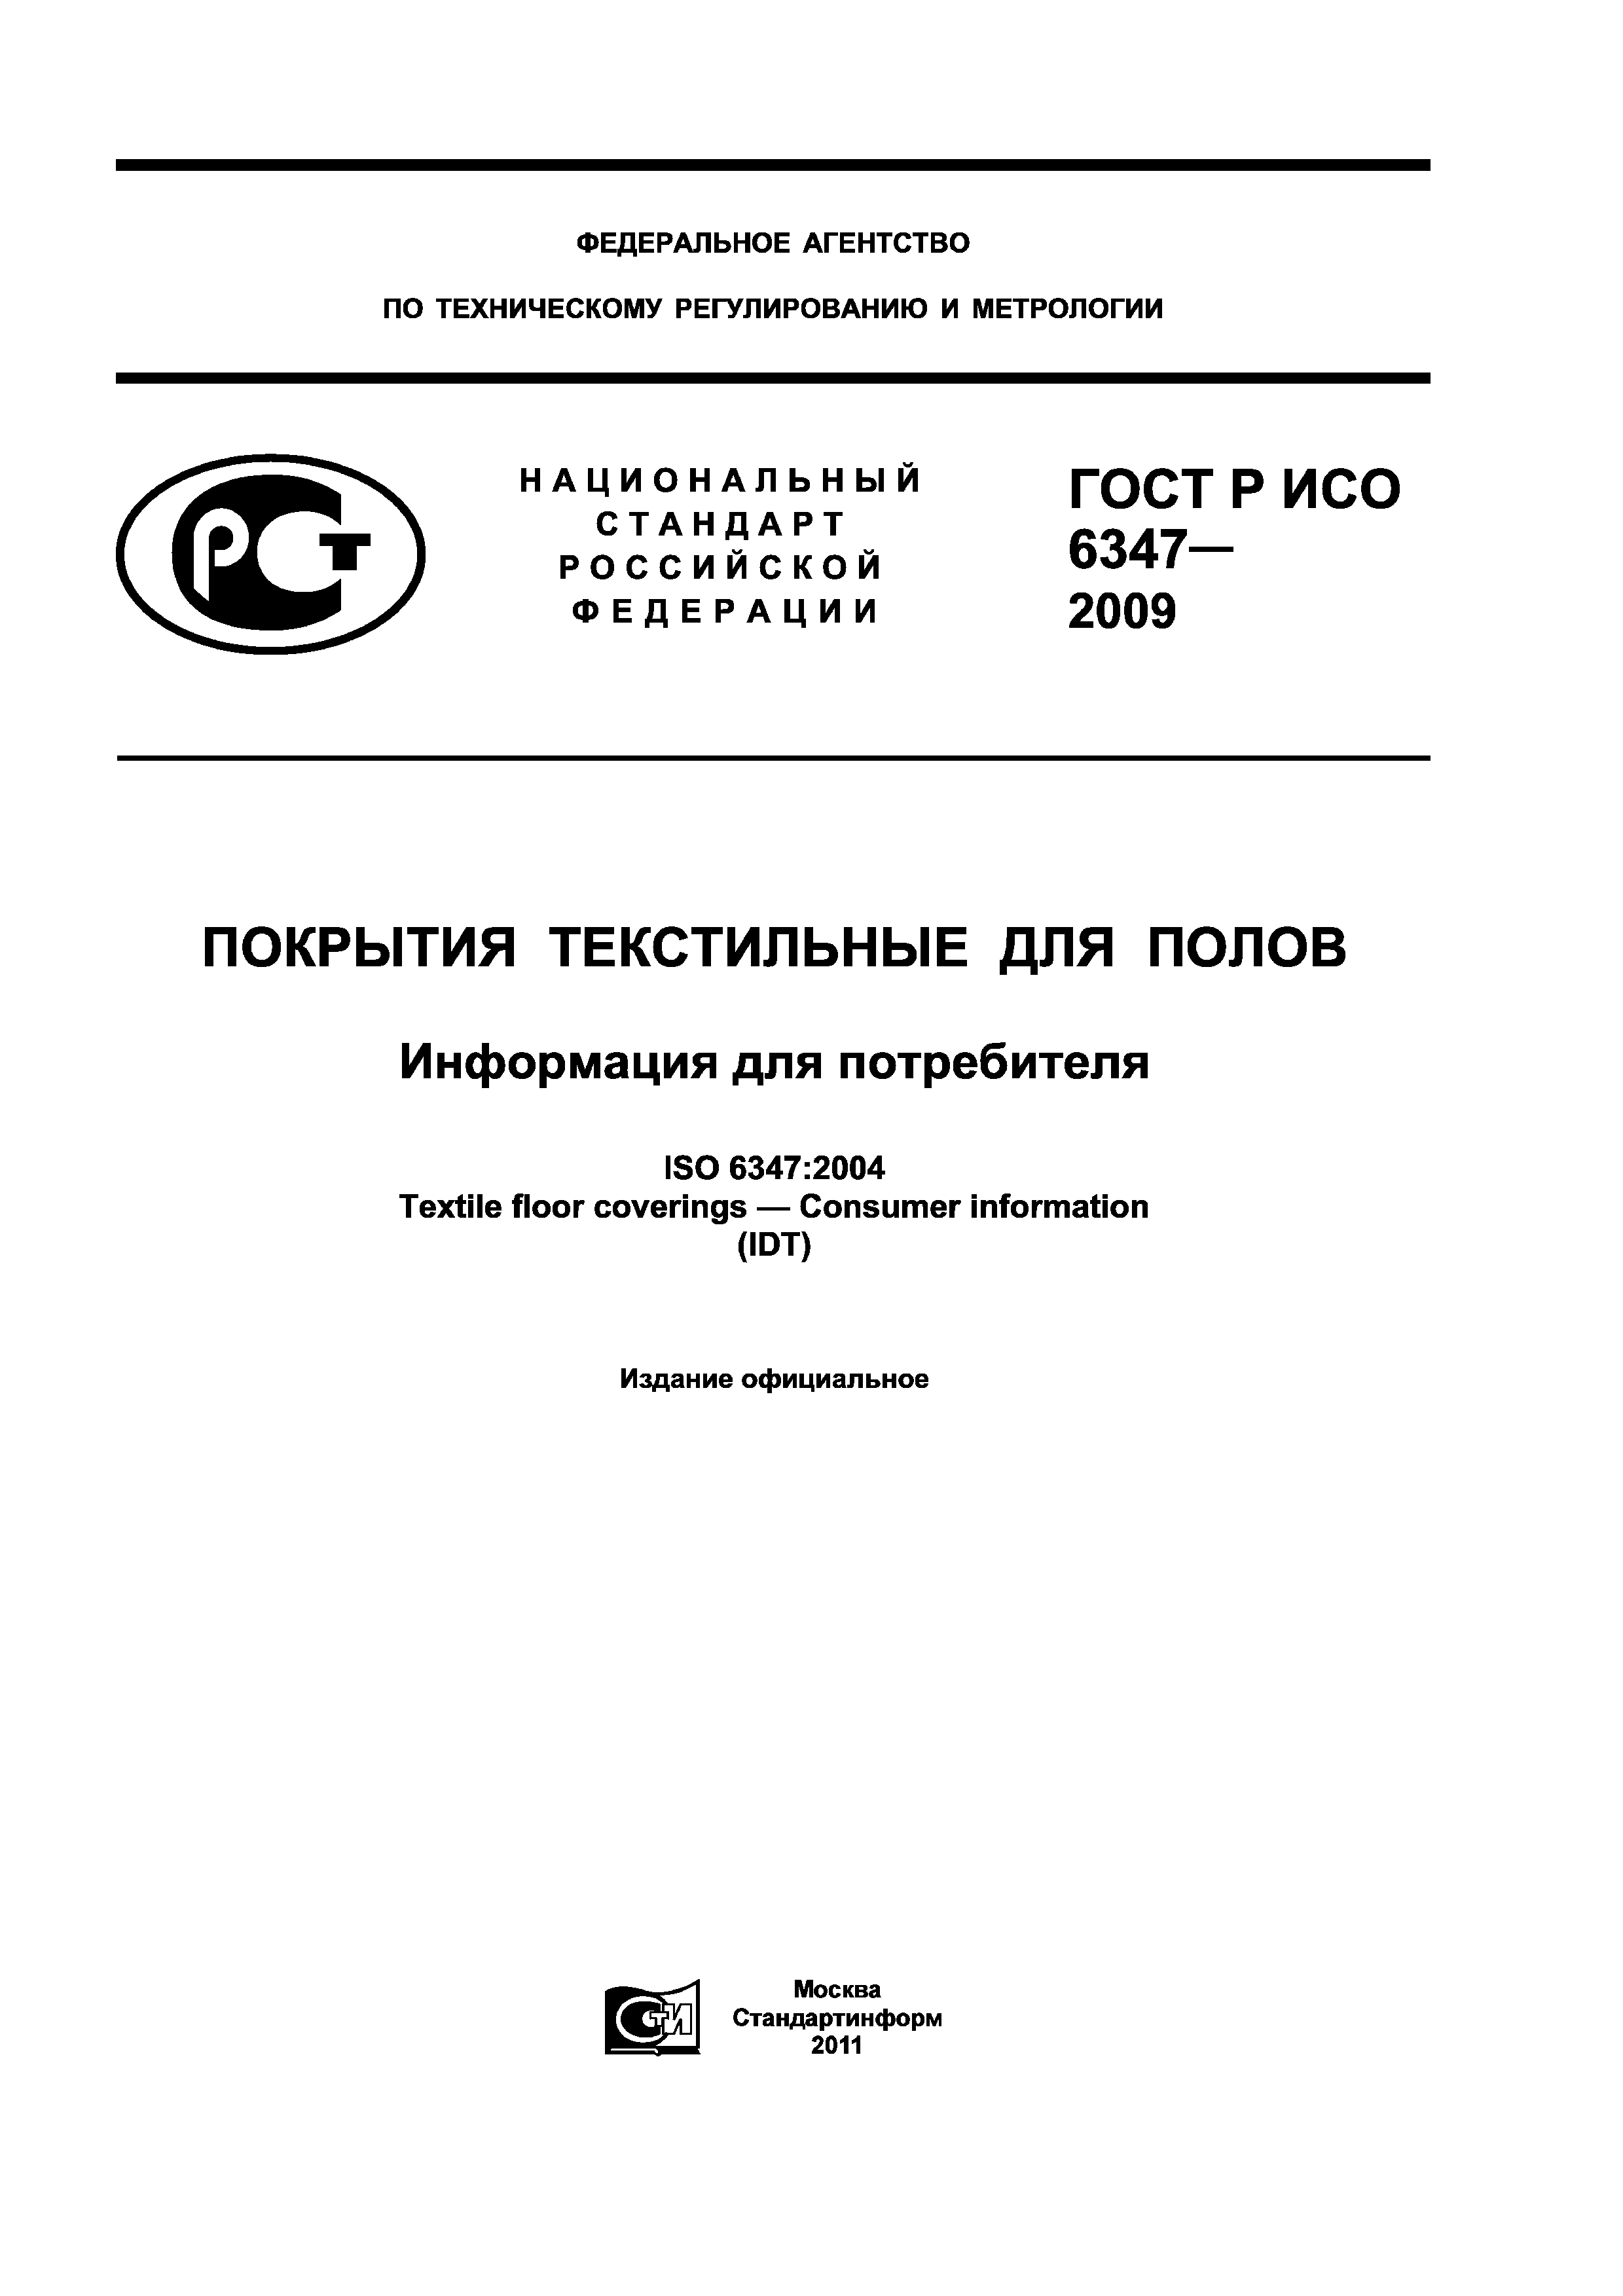 ГОСТ Р ИСО 6347-2009